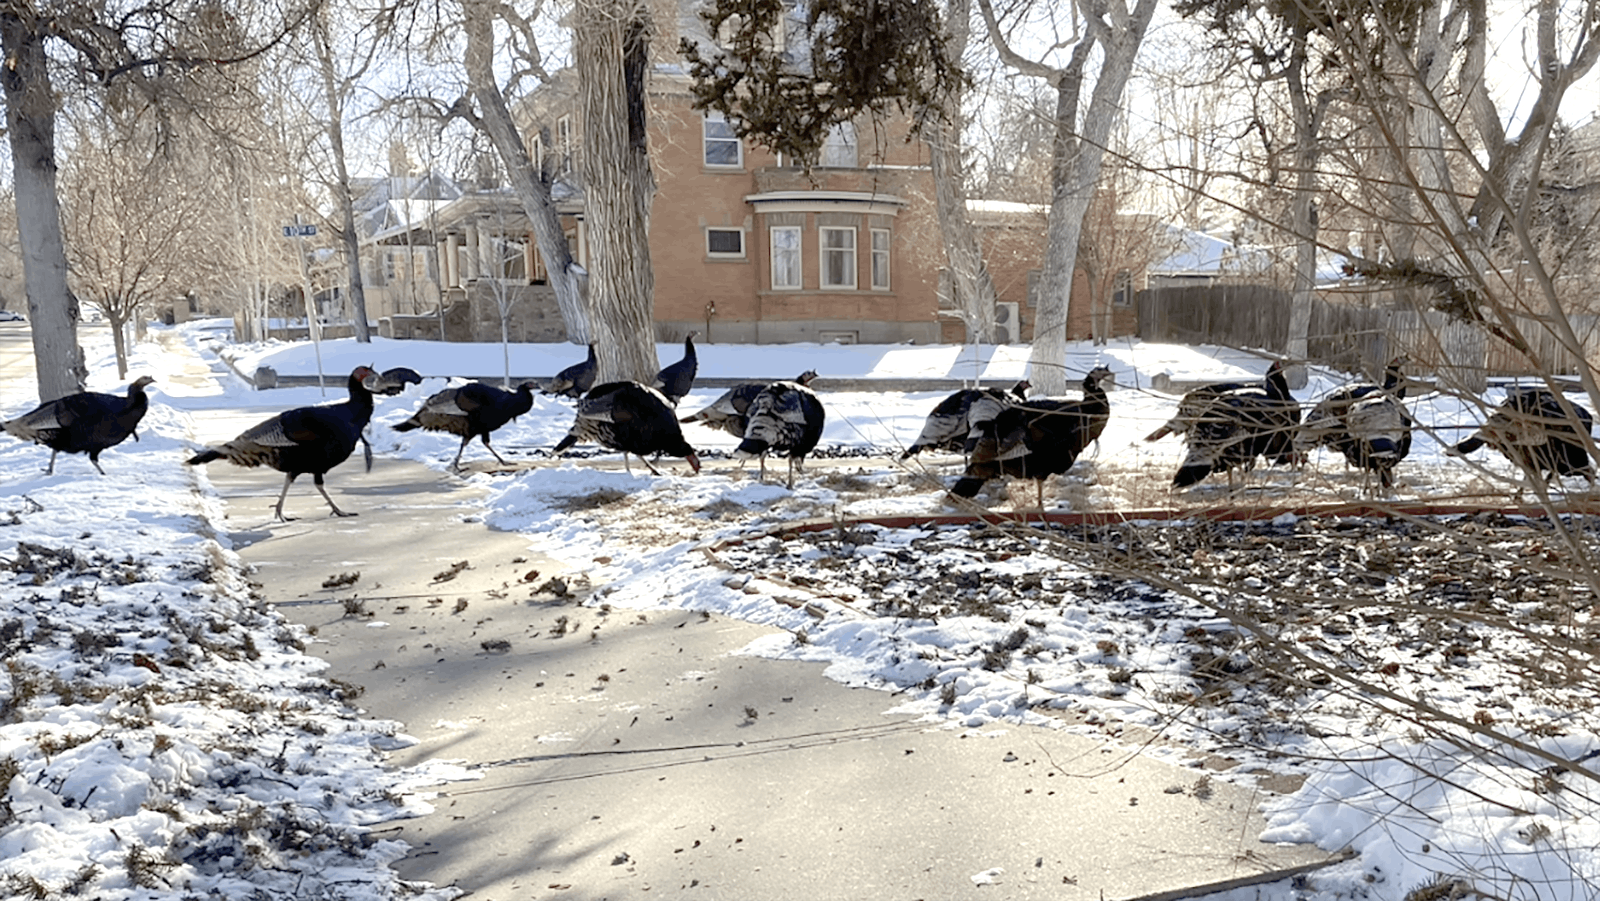 A flock of turkeys gather in a yard on South Wolcott Street in Casper.